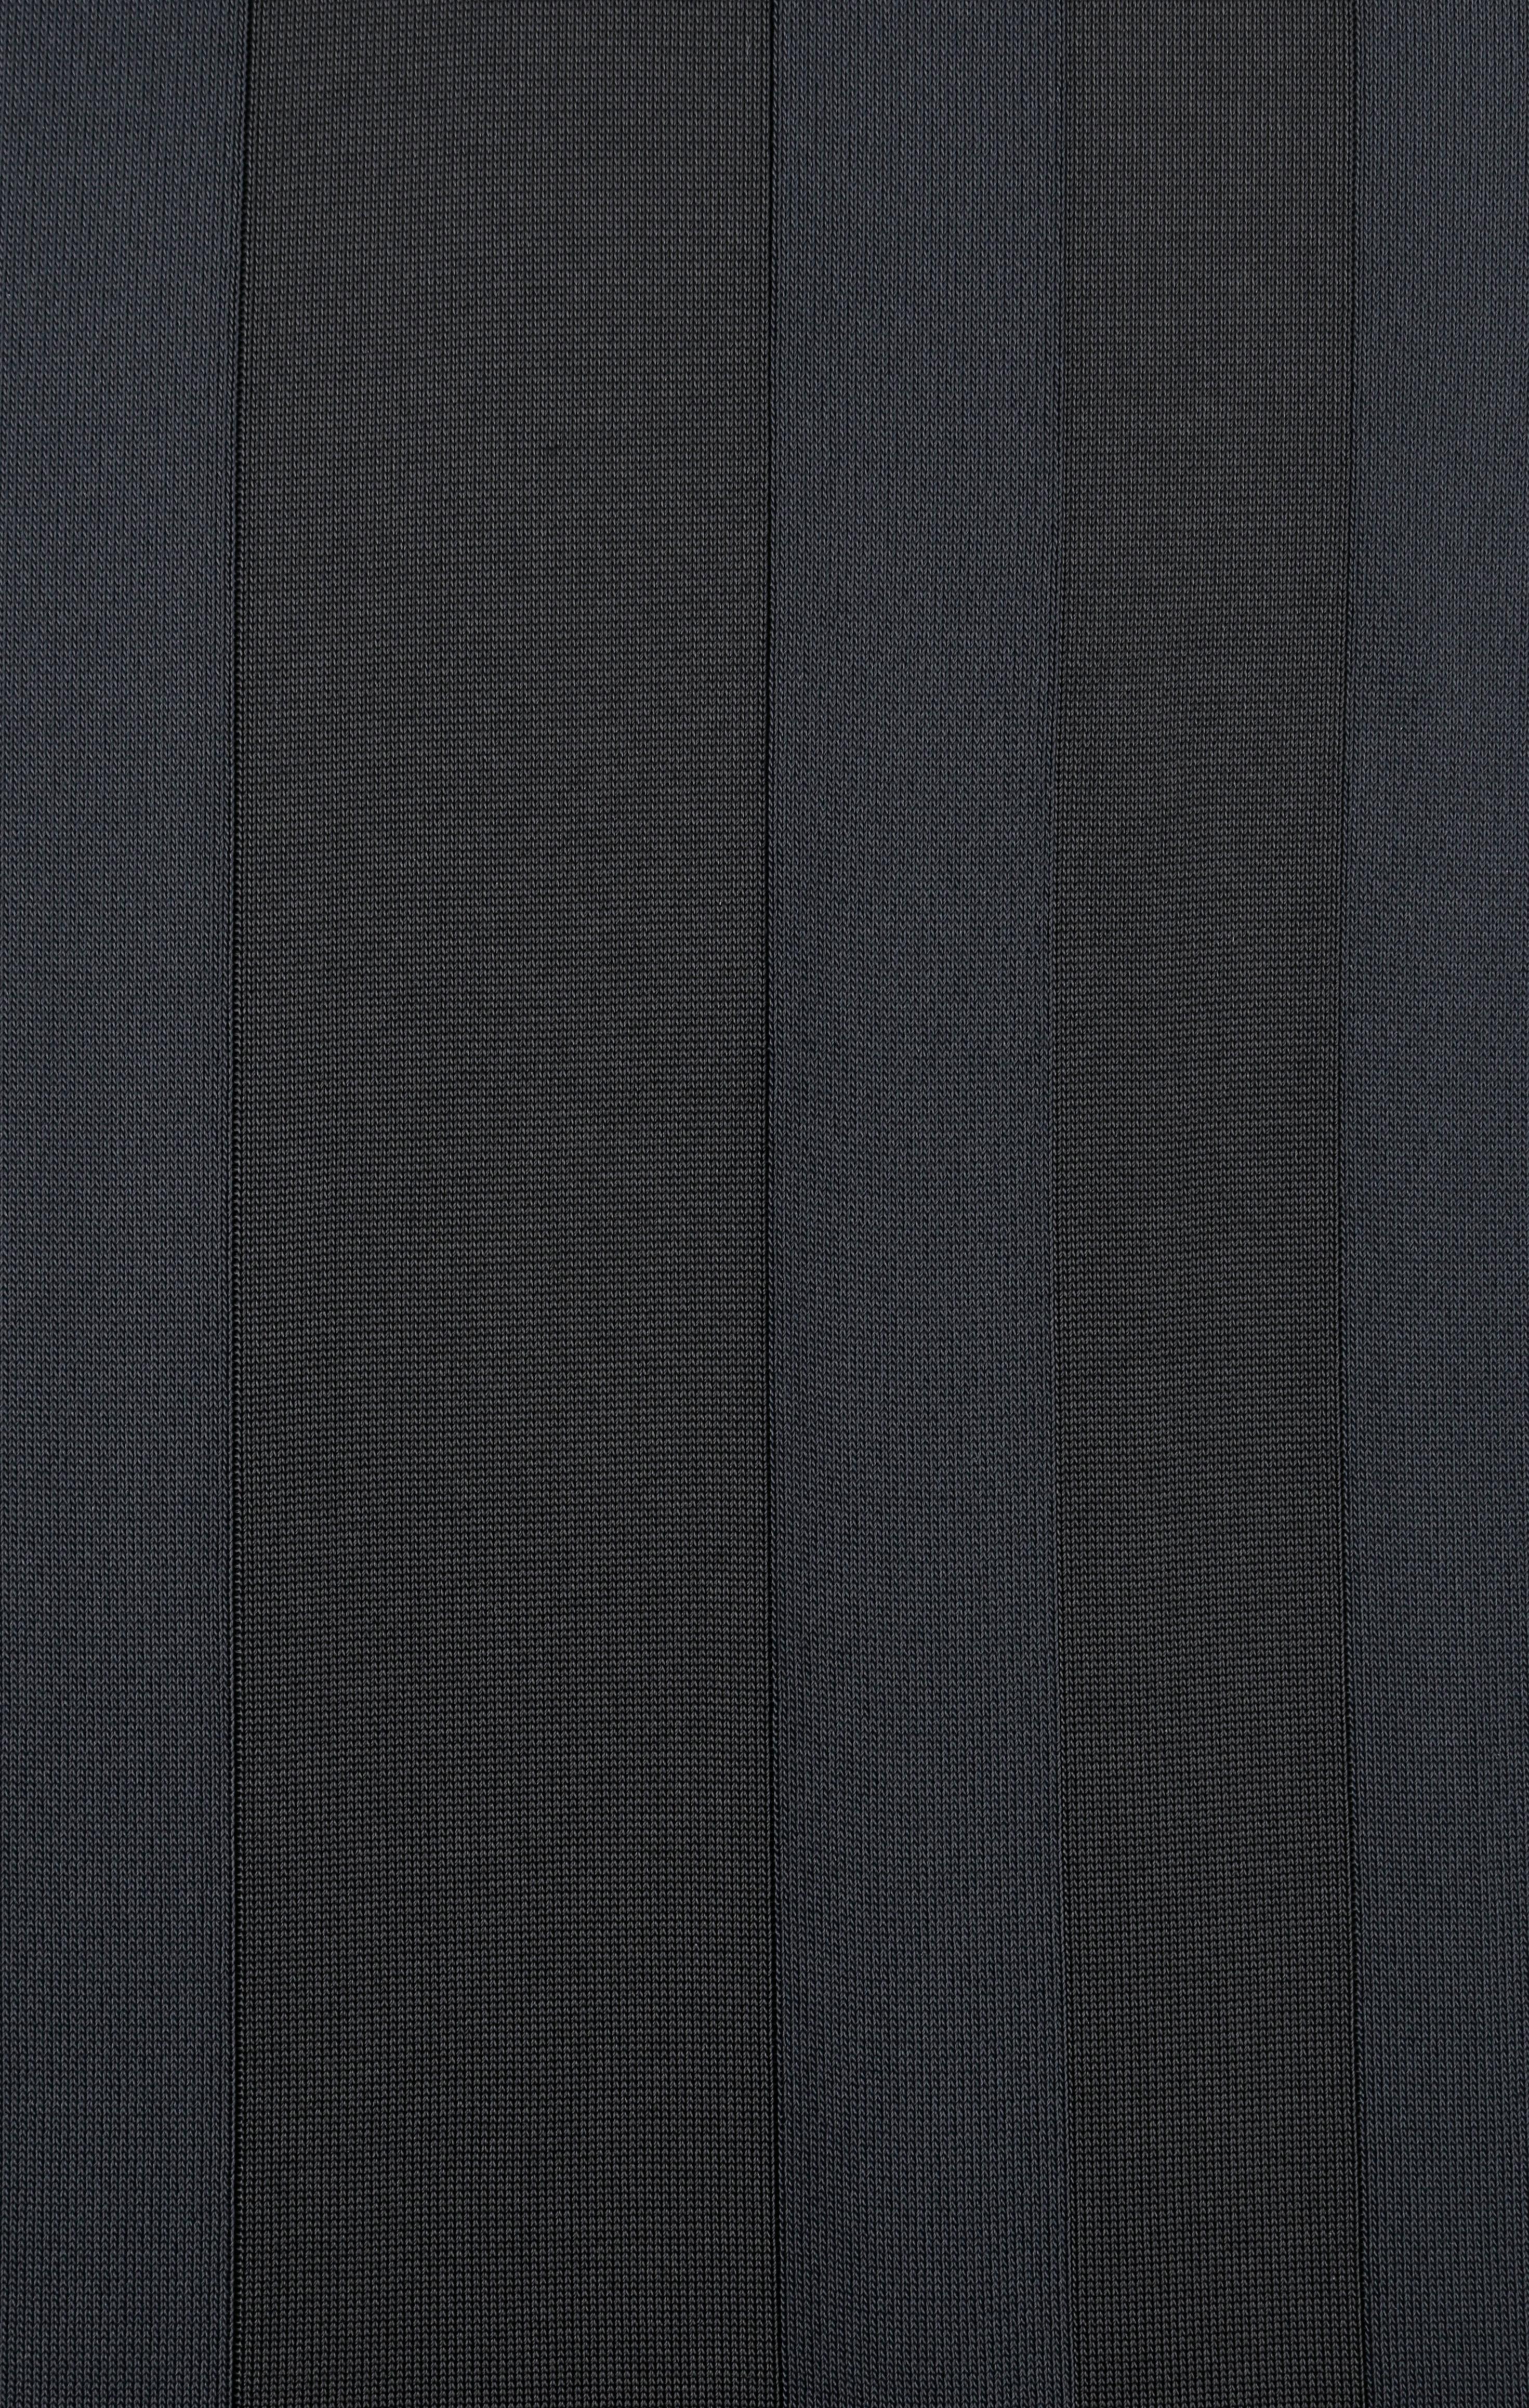 ALEXANDER McQUEEN Resort 2010 Blue Black Geometric Pattern Knit Sheath Dress For Sale 2